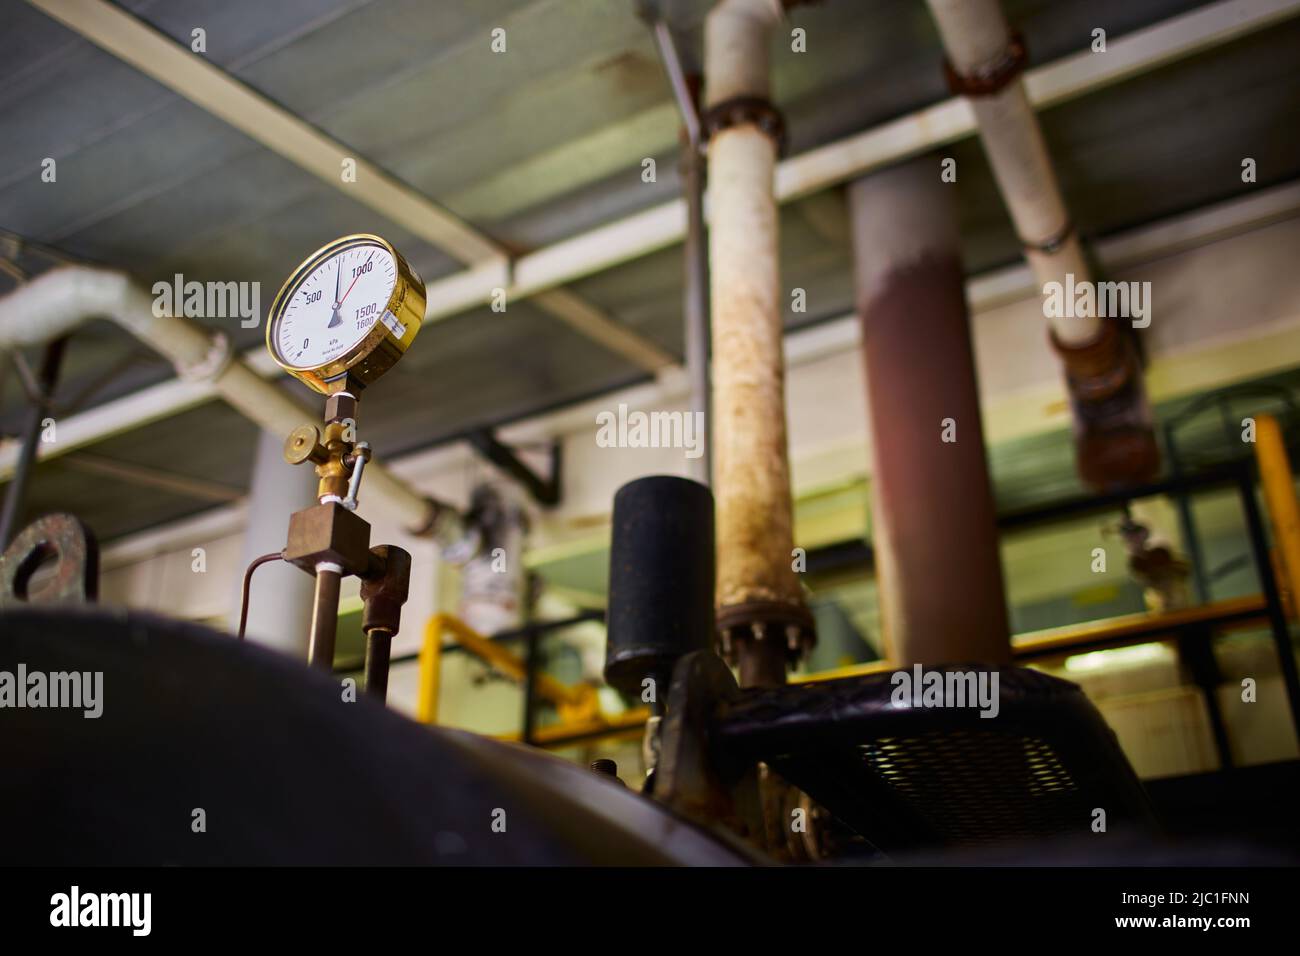 Dial de la válvula de presión en una sala de calderas de vapor. Tanques de vapor con tuberías y rezagados. Foto de stock